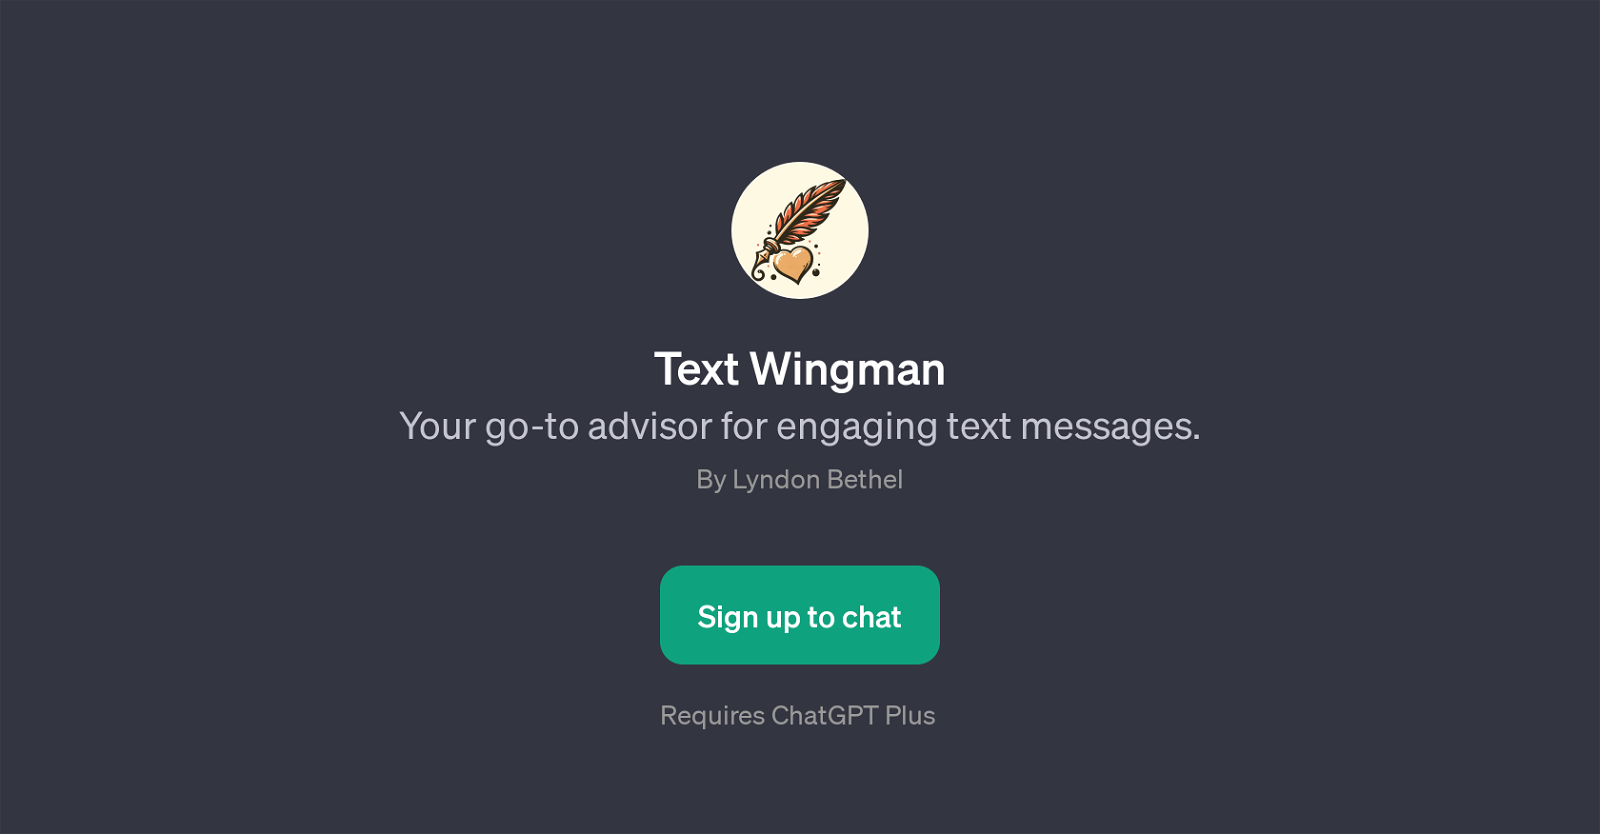 Text Wingman website